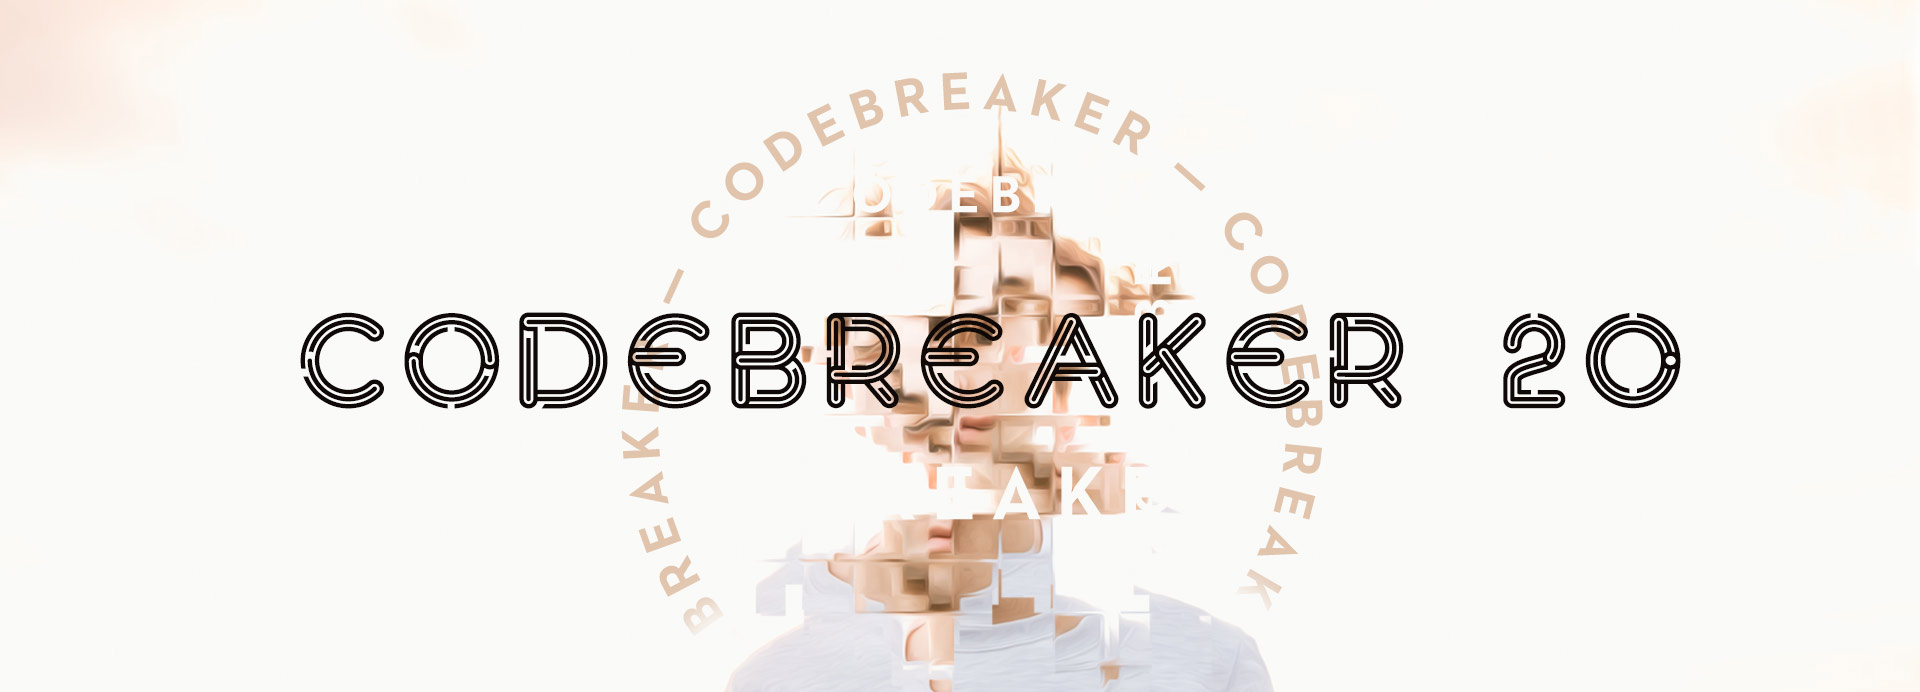 2020 - Code Breaker